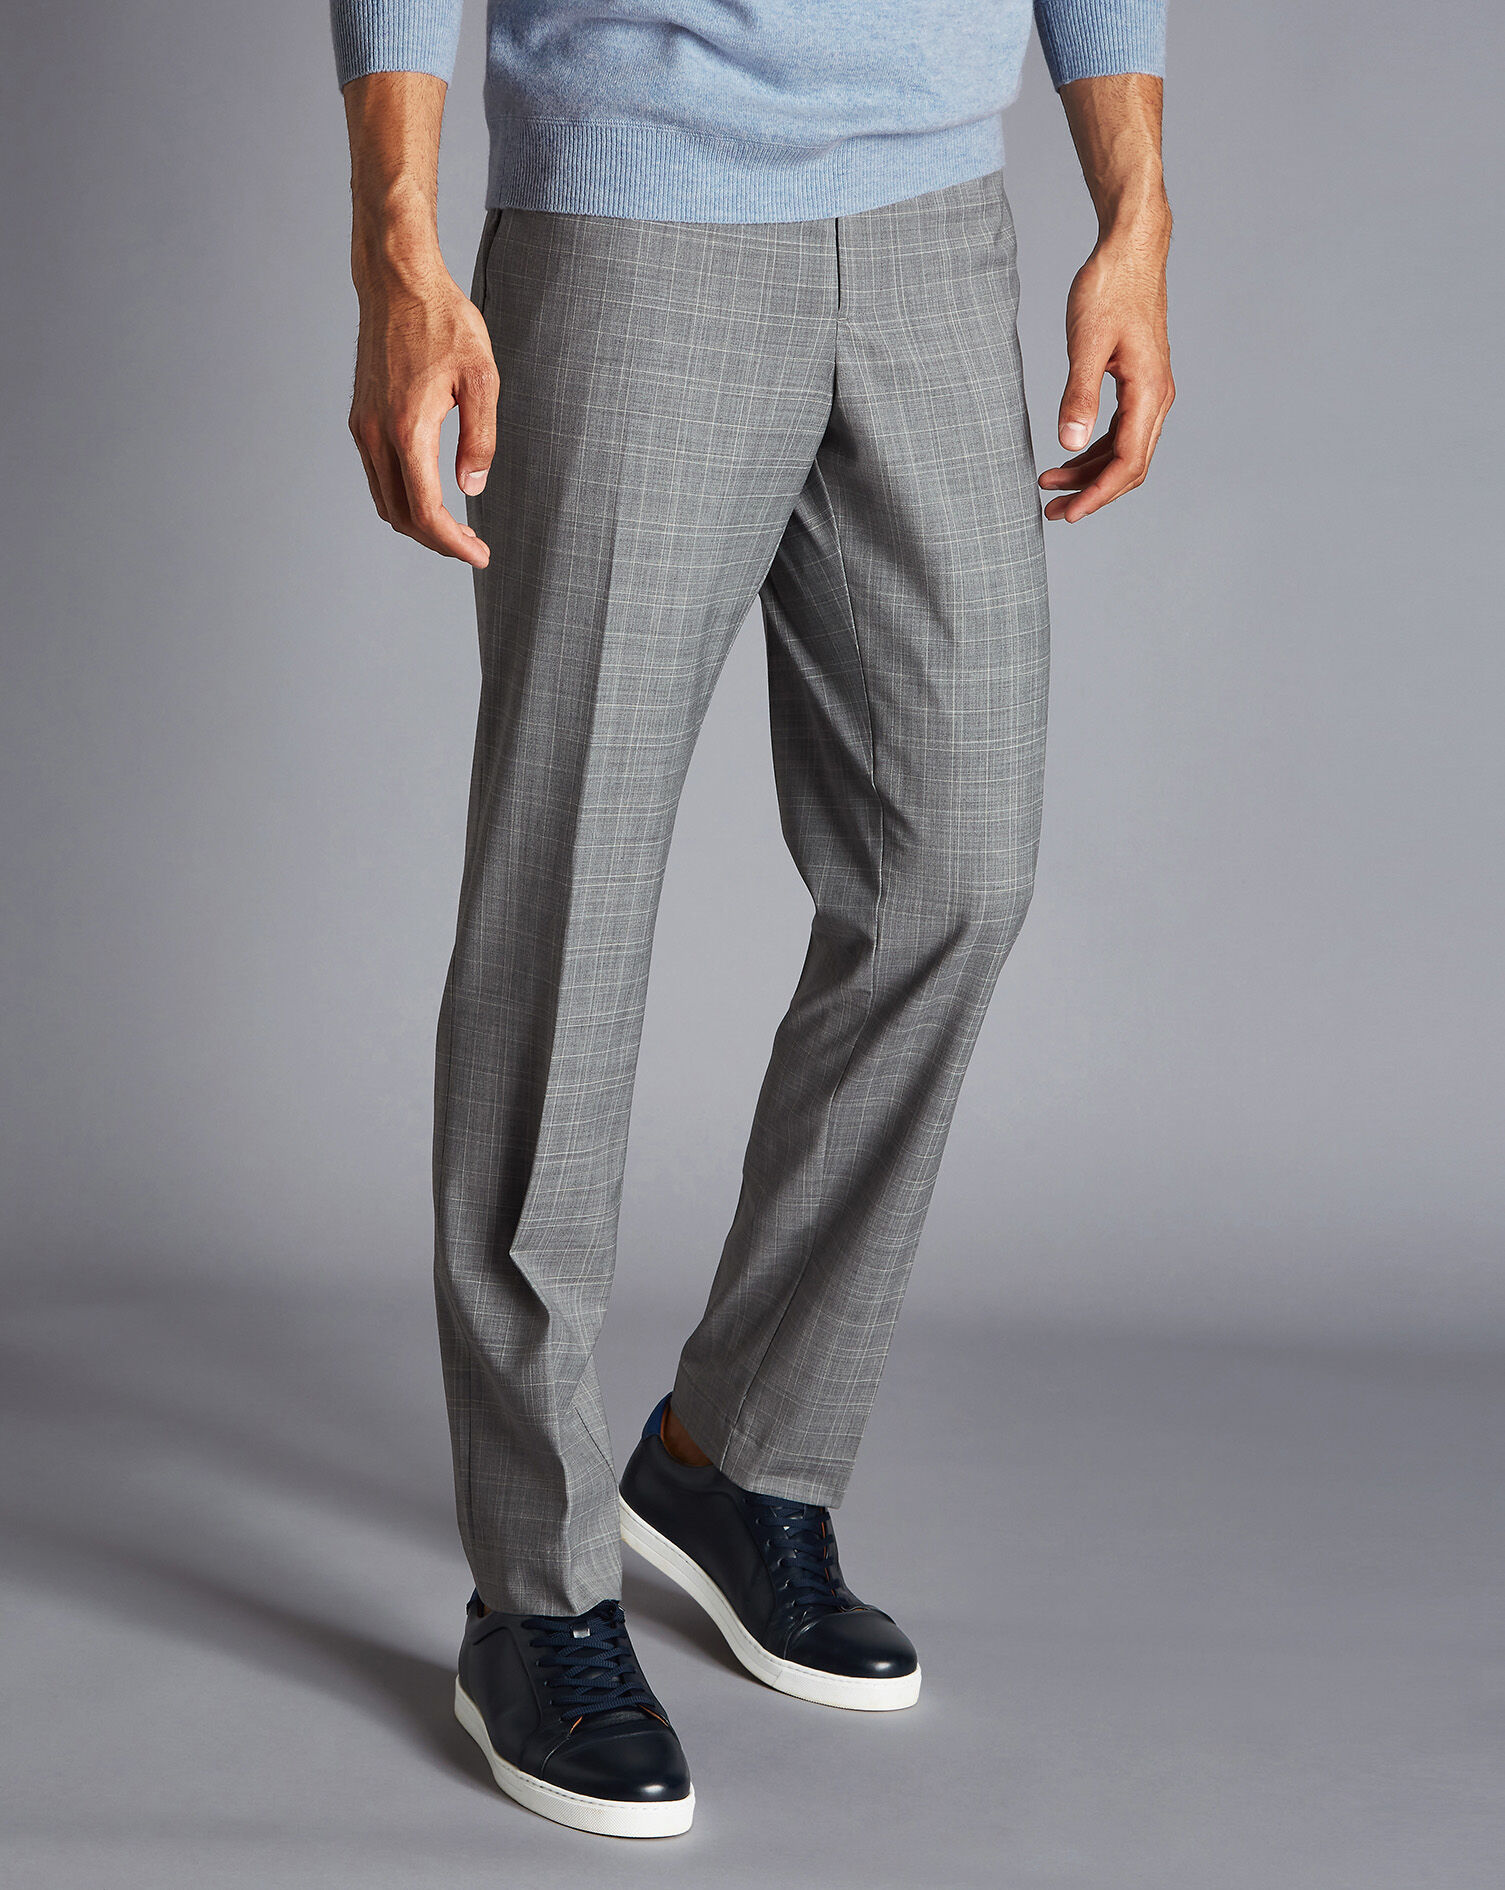 Fashion Trousers Woolen Trousers Sulu Woolen Trousers black-light grey striped pattern casual look 